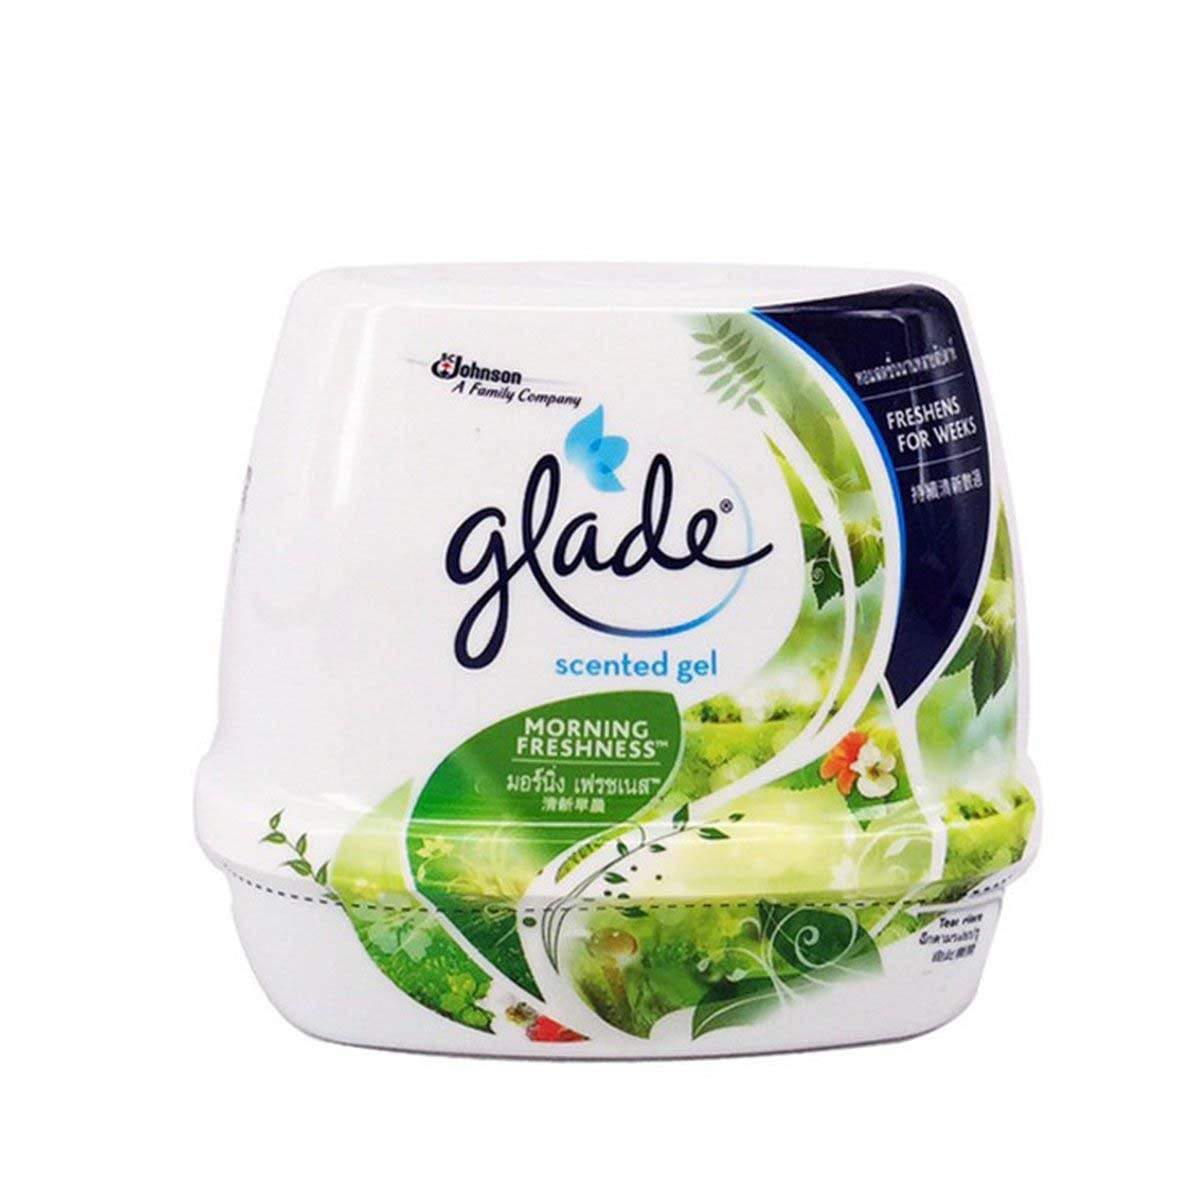 Glade Scented Gel Morning Freshness Air Freshener 180g